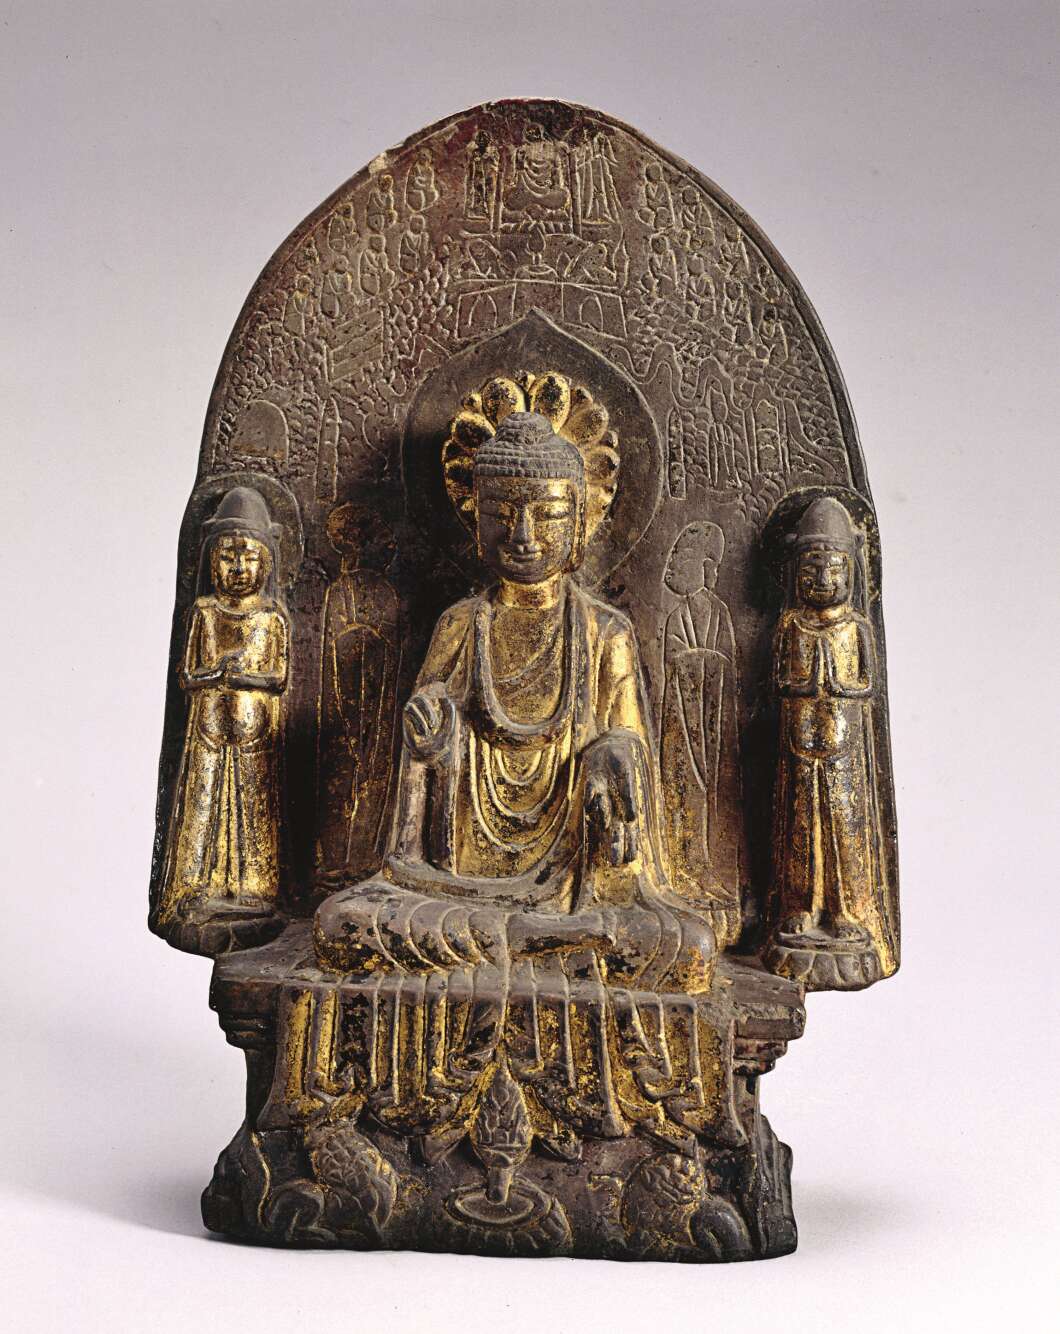 « L’arrivée du bouddhisme en Chine transforme la culture du parfum. Sur cette stèle figurent cinq personnages – un bouddha, deux disciples et deux bodhisattva. Au pied du bouddha se trouve un brûle-parfum : son corps et son couvercle ont la forme d’une fleur de lotus sur le point d’éclore. »